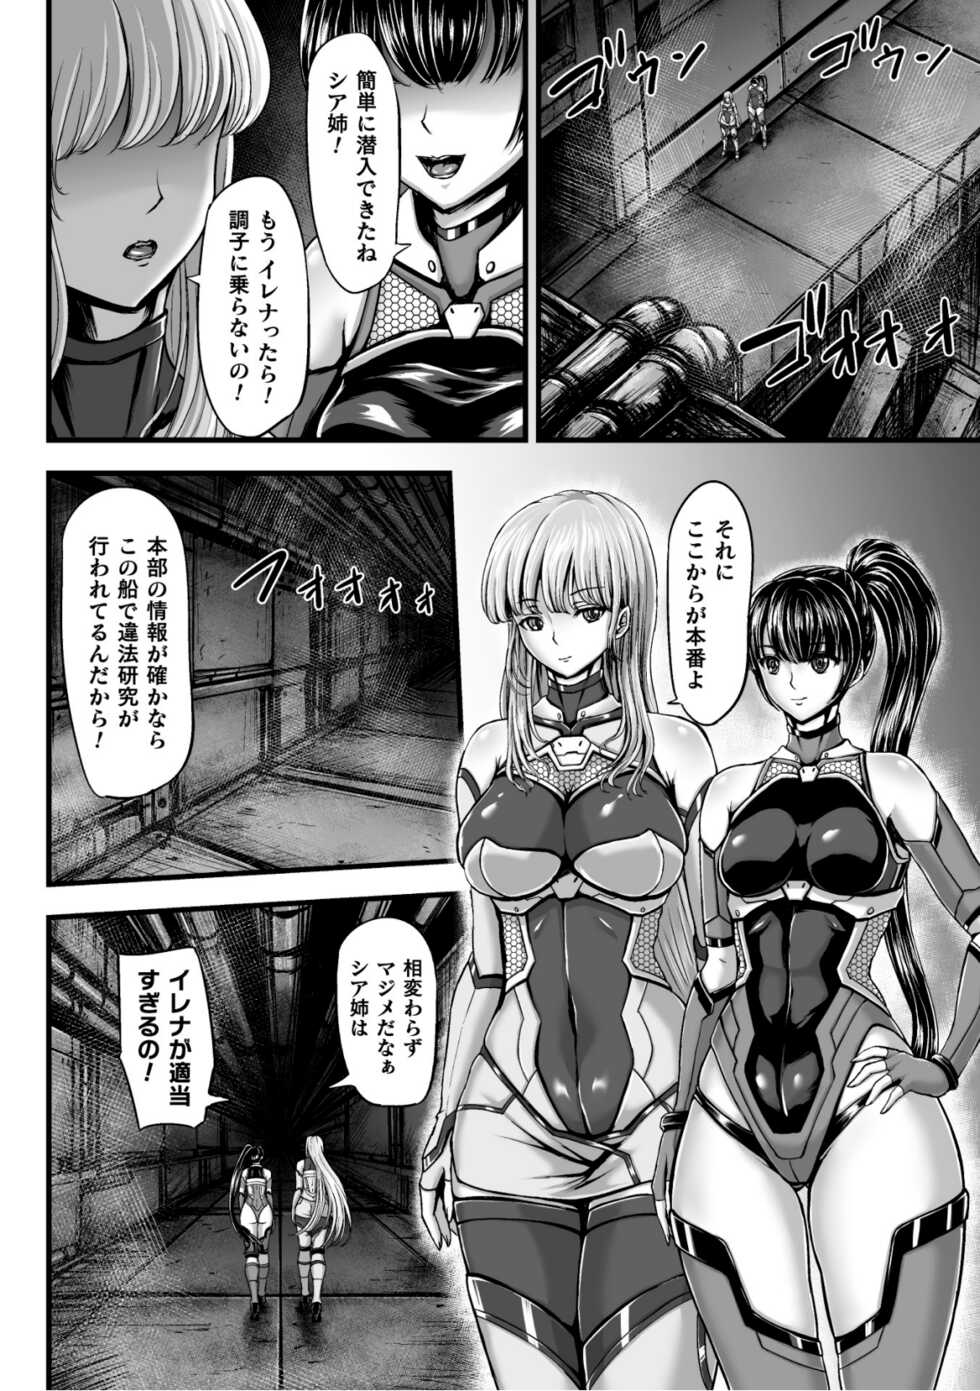 [yuyu] Kangoku Tentacle Battleship Episode 1 - Page 6